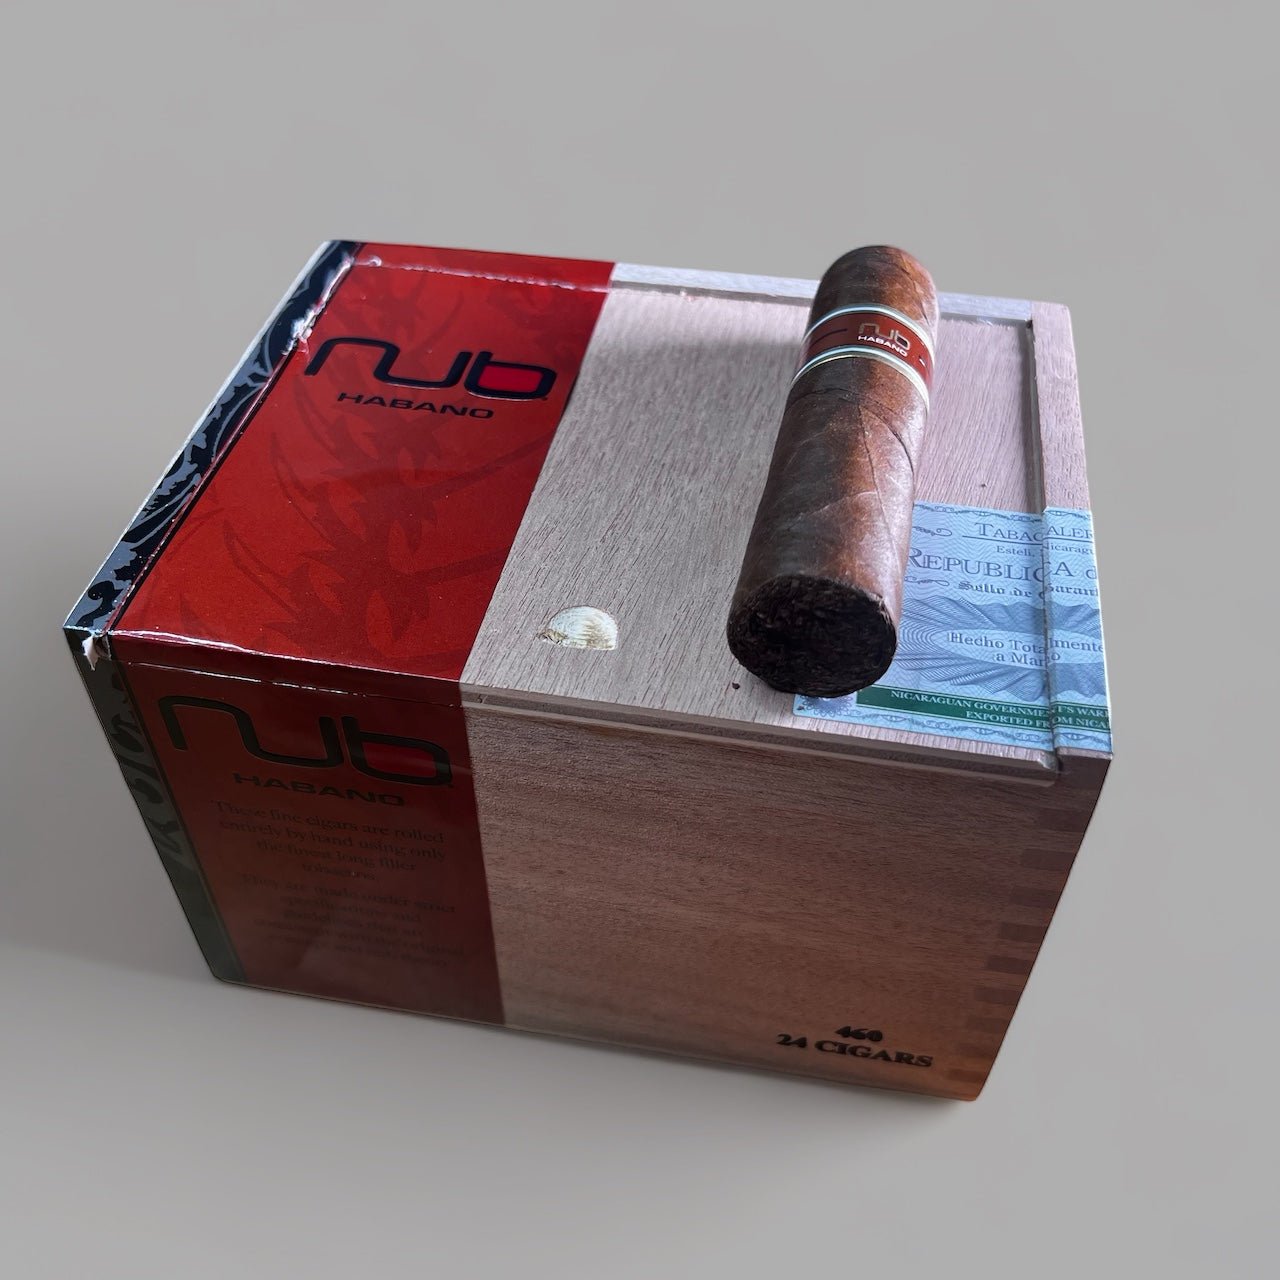 Oliva Nub Habano 460 - Cigar 30